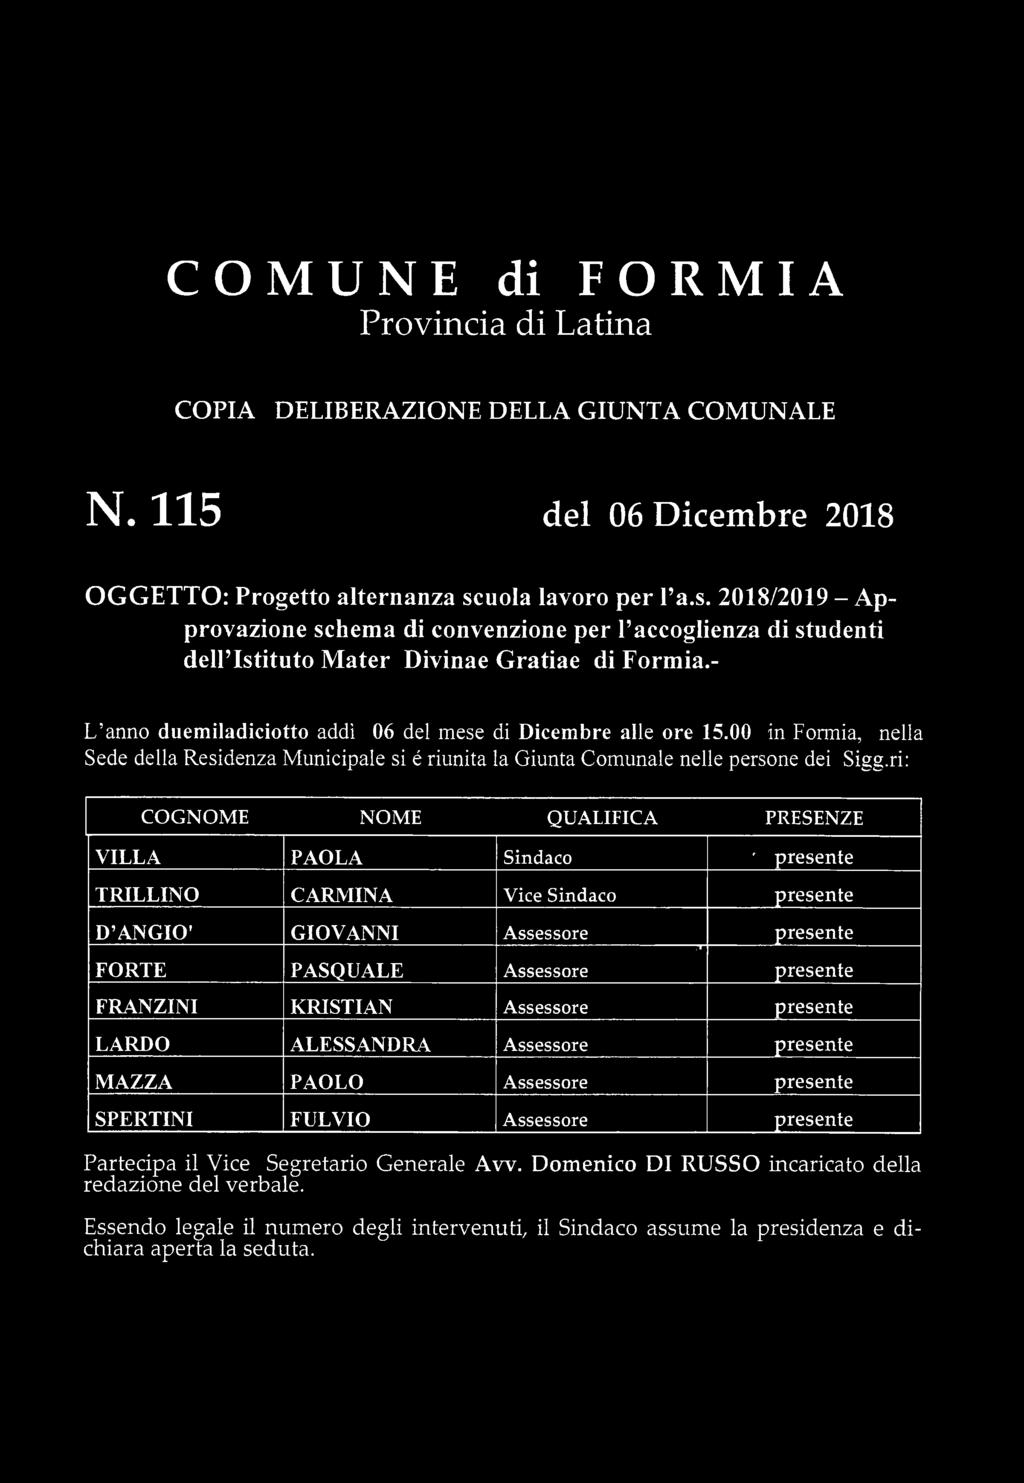 - L anno duem iladiciotto addì 06 del mese di Dicembre alle ore 15.00 in Formia, nella Sede della Residenza M unicipale si é riunita la Giunta Comunale nelle persone dei Sigg.